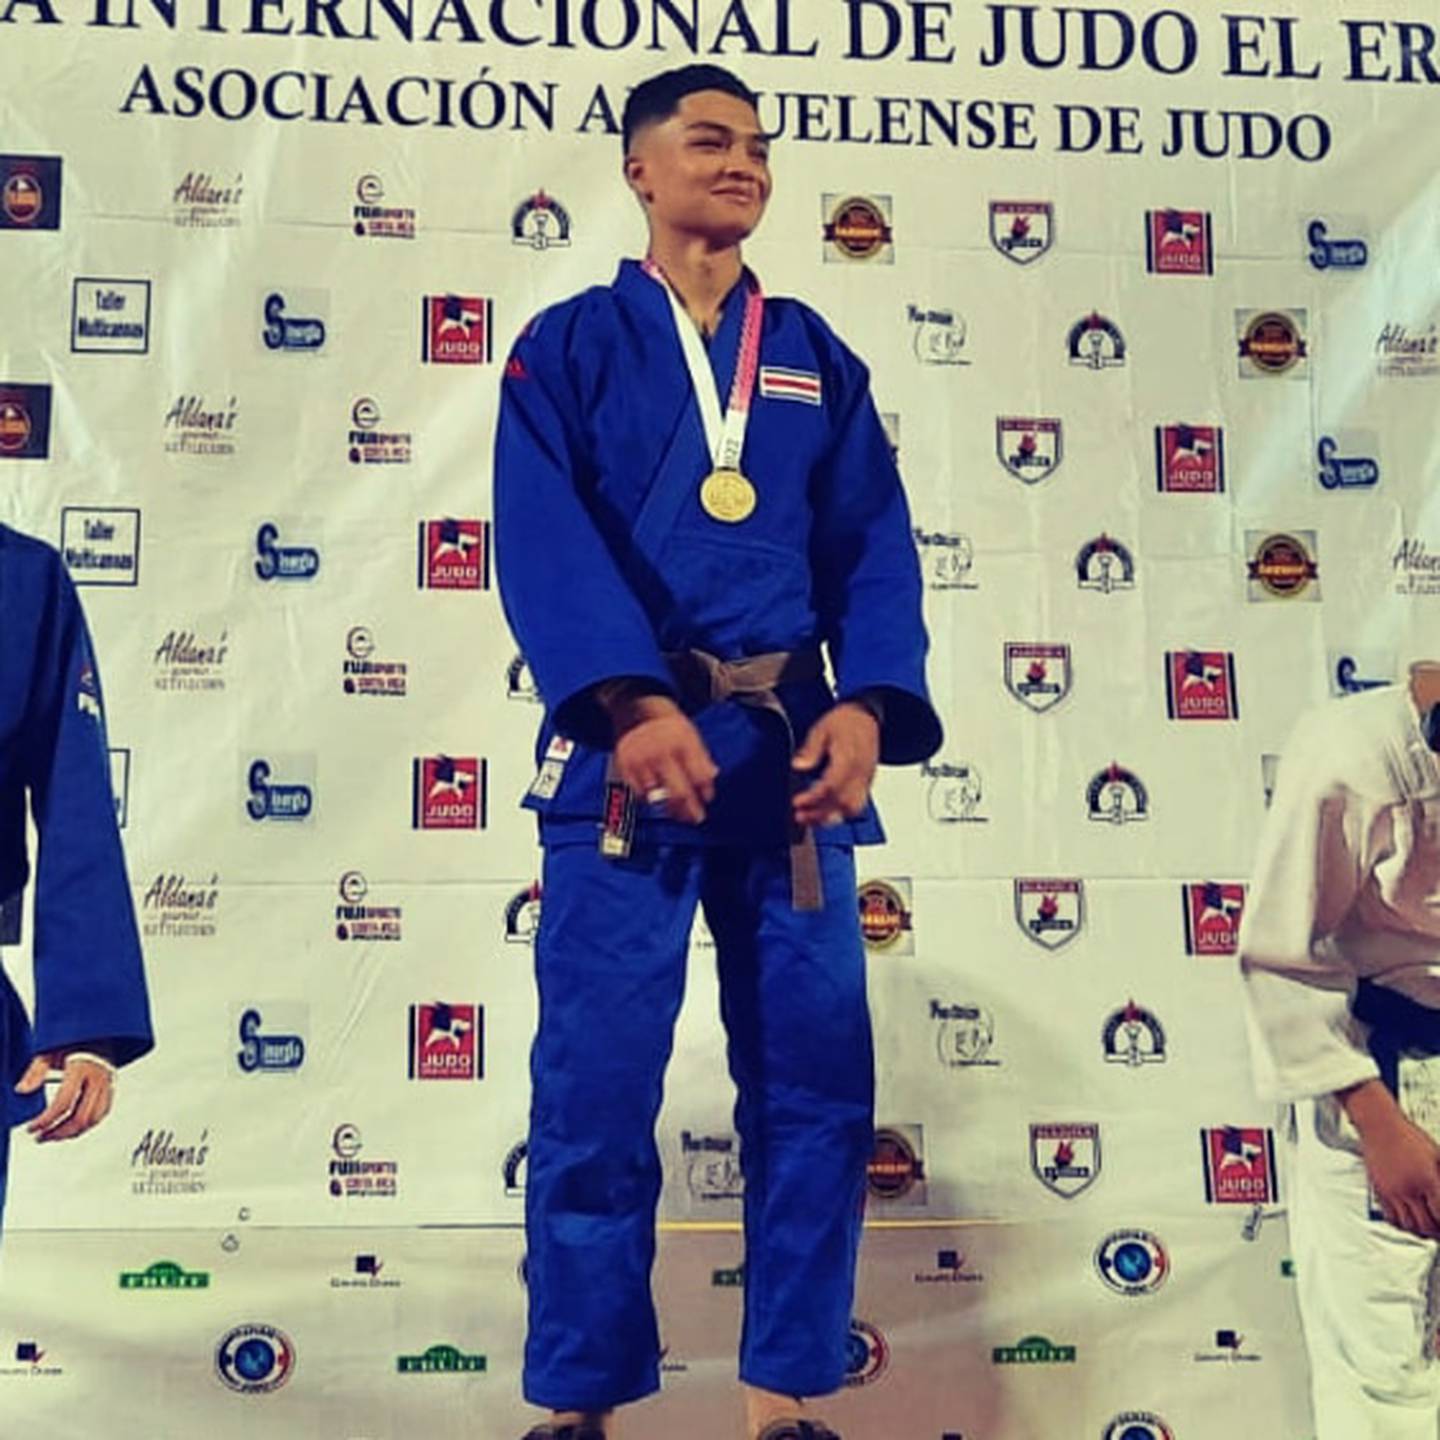 David Domínguez, judo, La Carpio